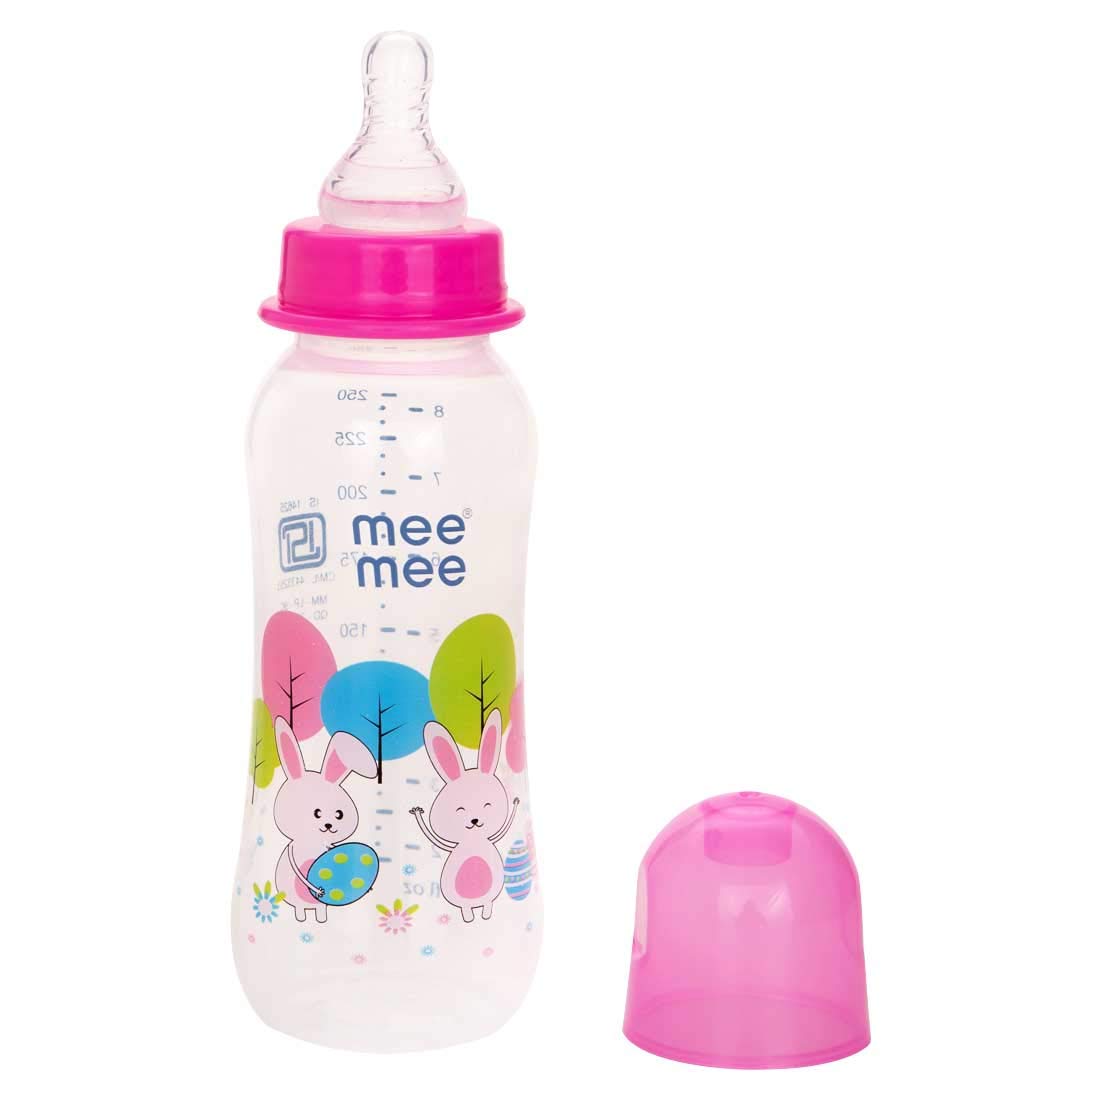 Mee Mee Printed Premium Baby Feeding Bottle ( Light Pink, 250ml - Pack of 2)